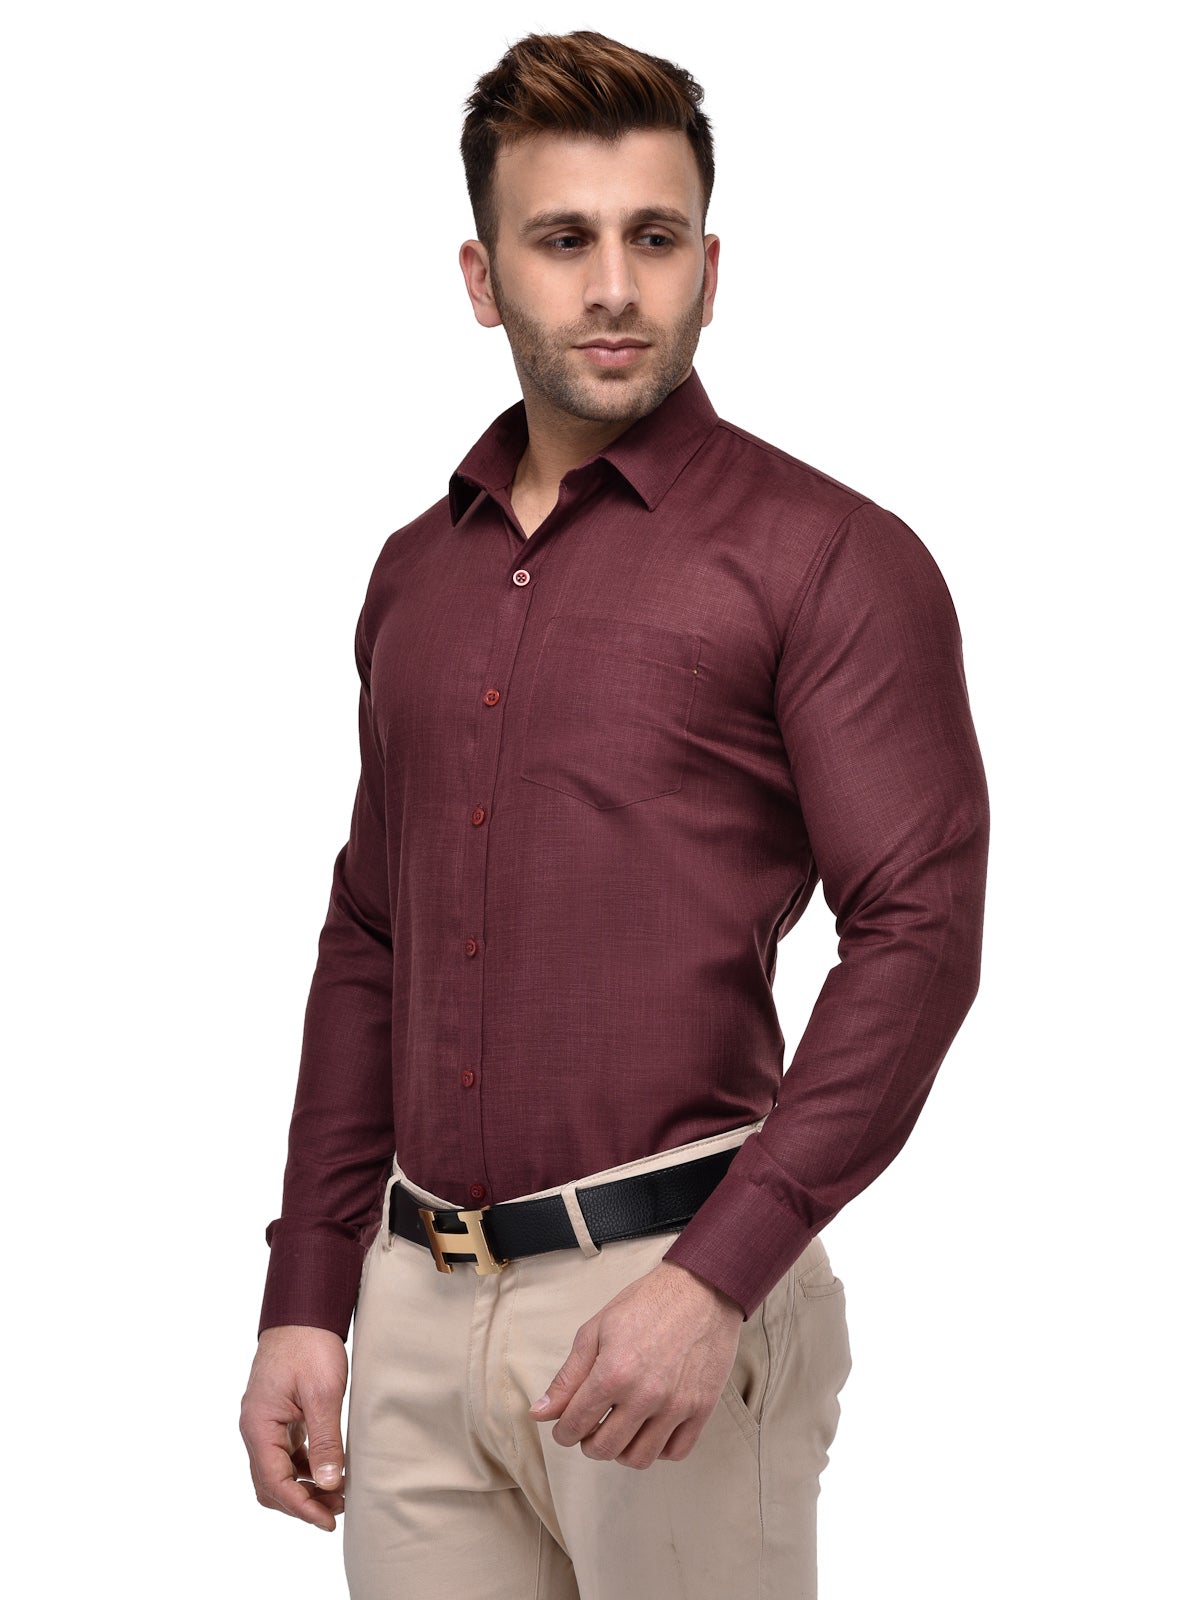 Men's Formal Maroon Shirt